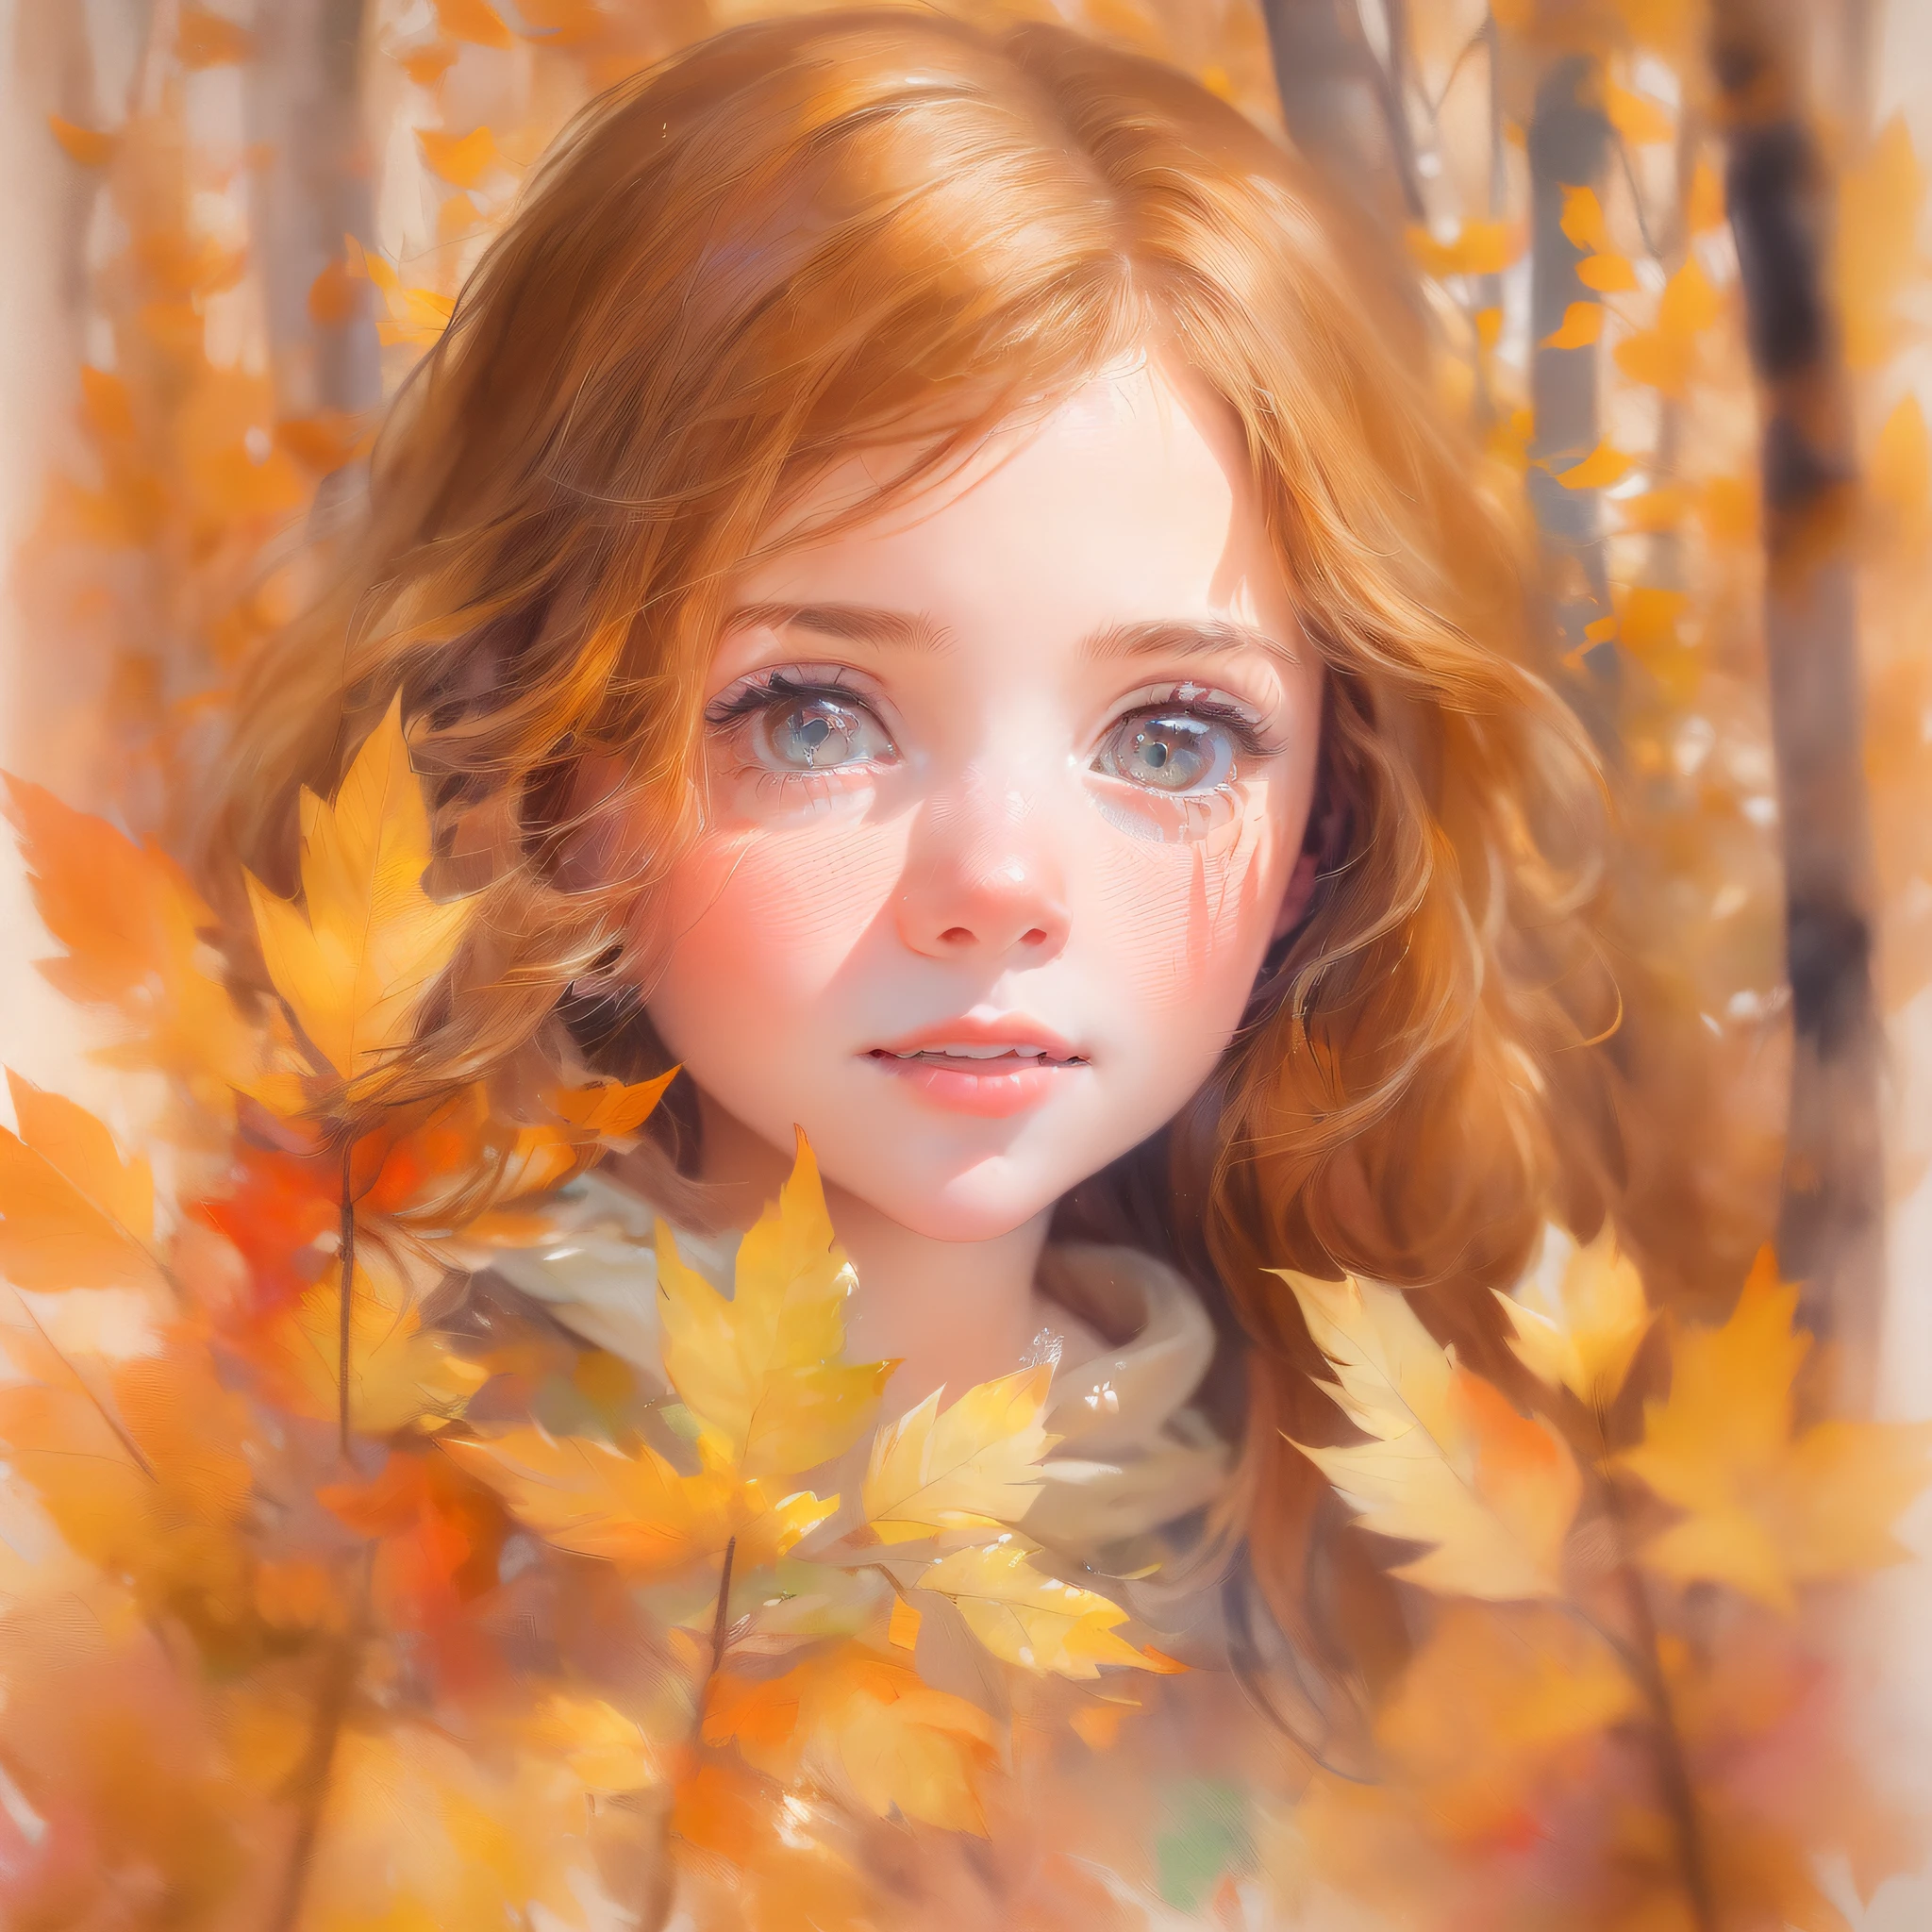 カメラがズームインすると, 若いヨーロッパの少女の顔の繊細な特徴が見えるようになる, 秋のさわやかな空気に赤くなった彼女のバラ色の頬を捉える, 優しく波打つ赤褐色の髪, 鮮やかな葉と遊び心のある森の生き物でいっぱいの太陽の光に照らされた森を探索するとき、彼女のヘーゼル色の目には好奇心の兆しが見える。, アートワーク, テクスチャ紙に描いた水彩画,